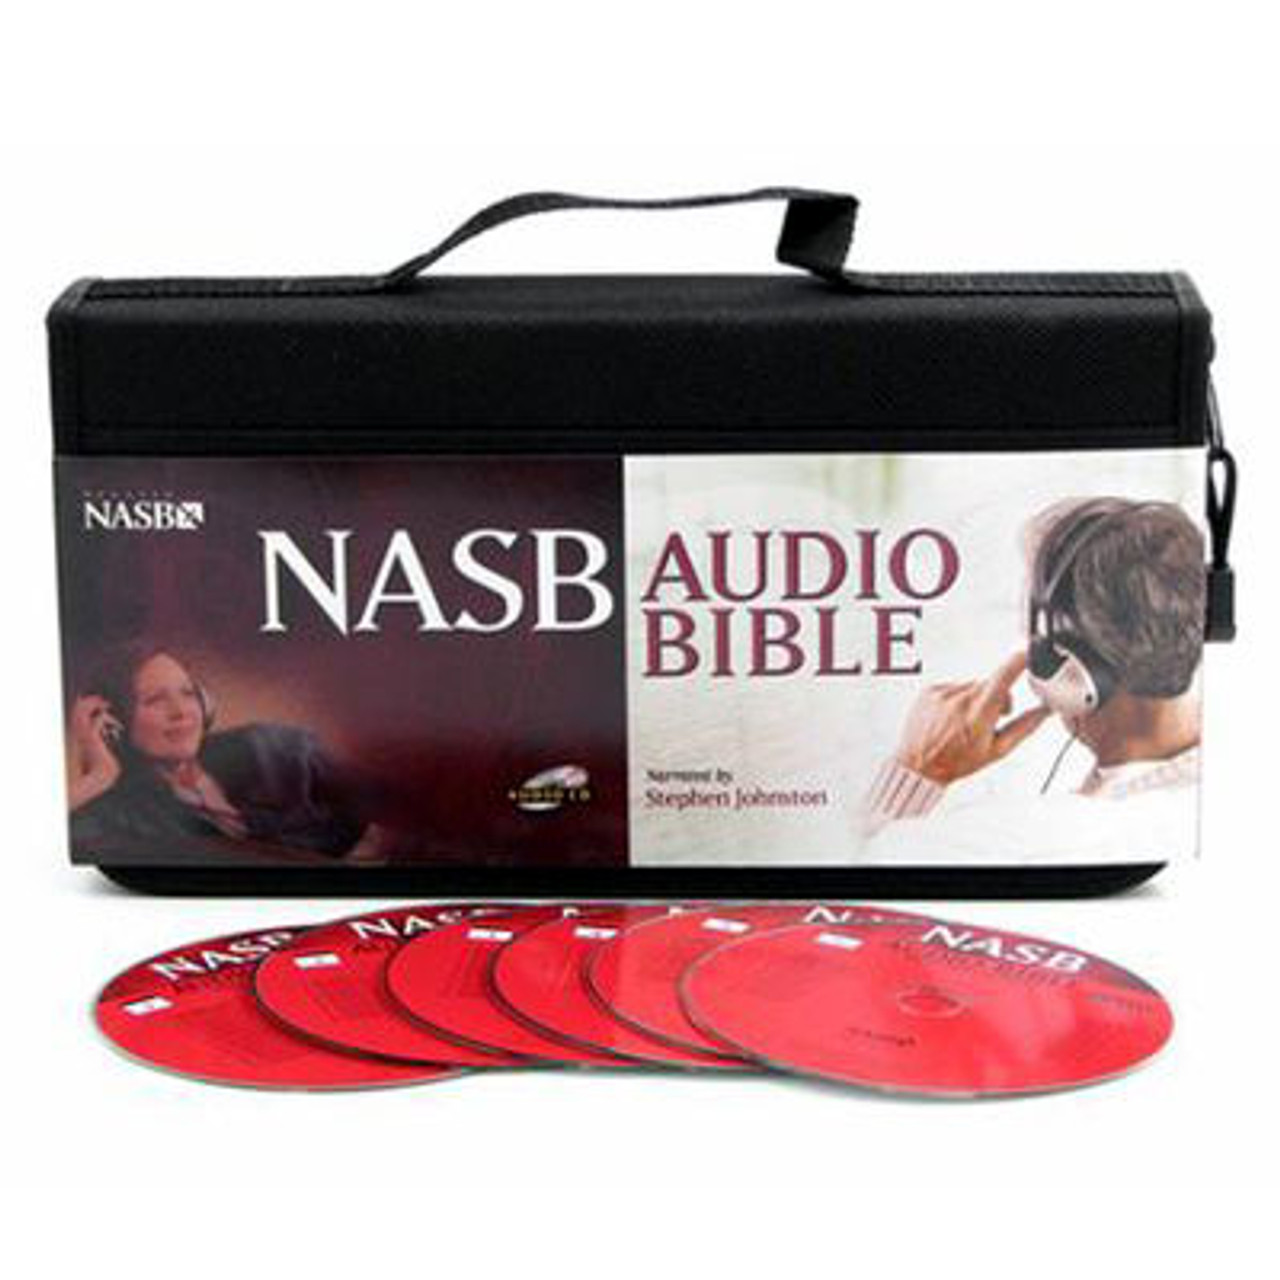 nasb audio bible mp3